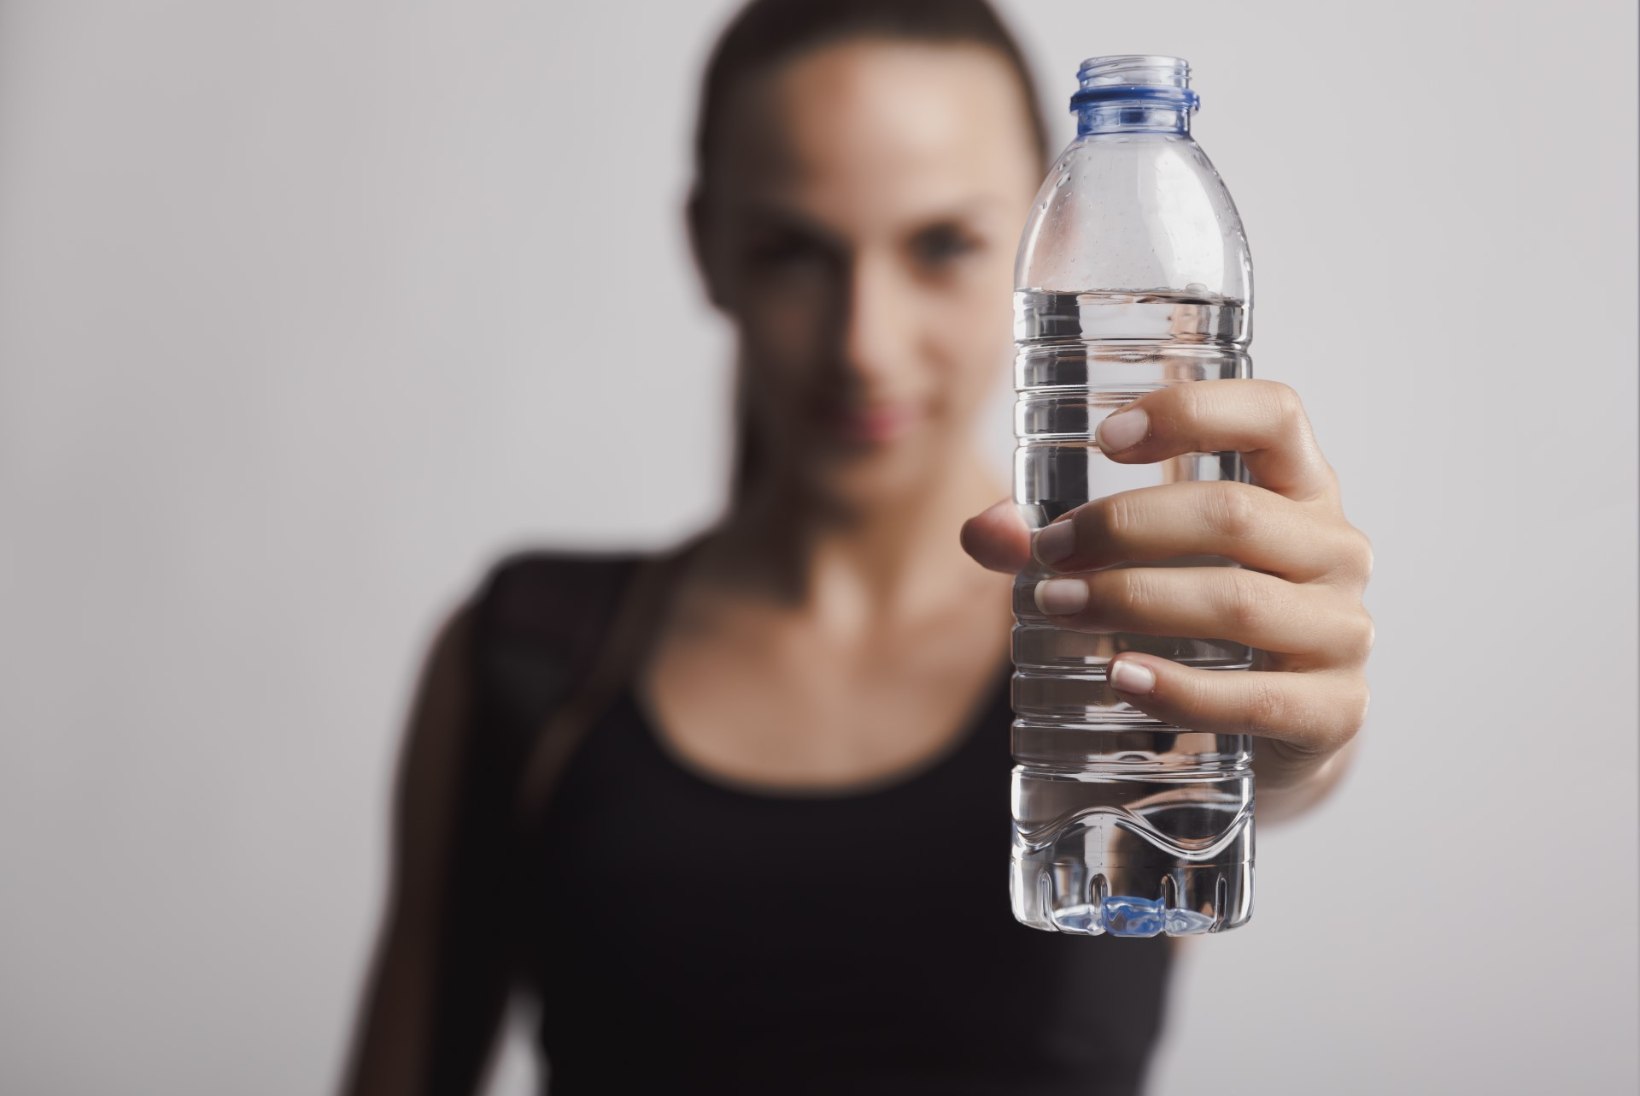 TÕESTATUD: lihtsaim viis kaalu langetada on juua vett